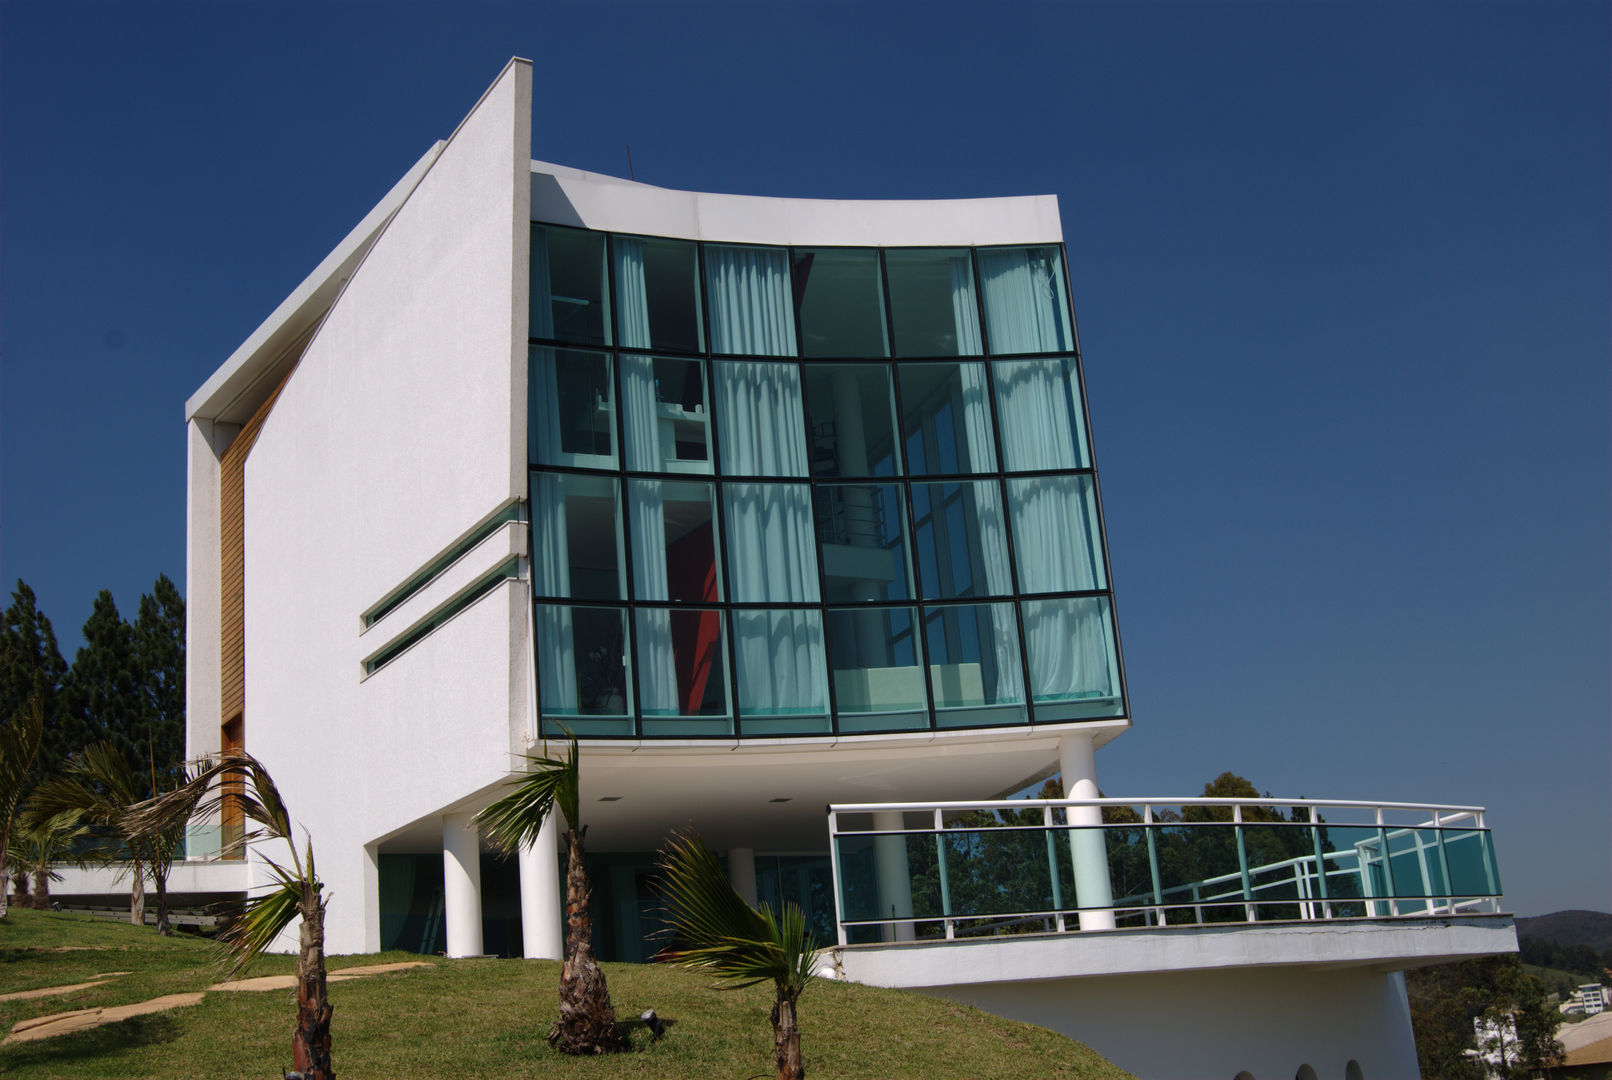 Casa Condomínio Vila Alpina - Nova Lima, Marcelo Sena Arquitetura Marcelo Sena Arquitetura Condominios